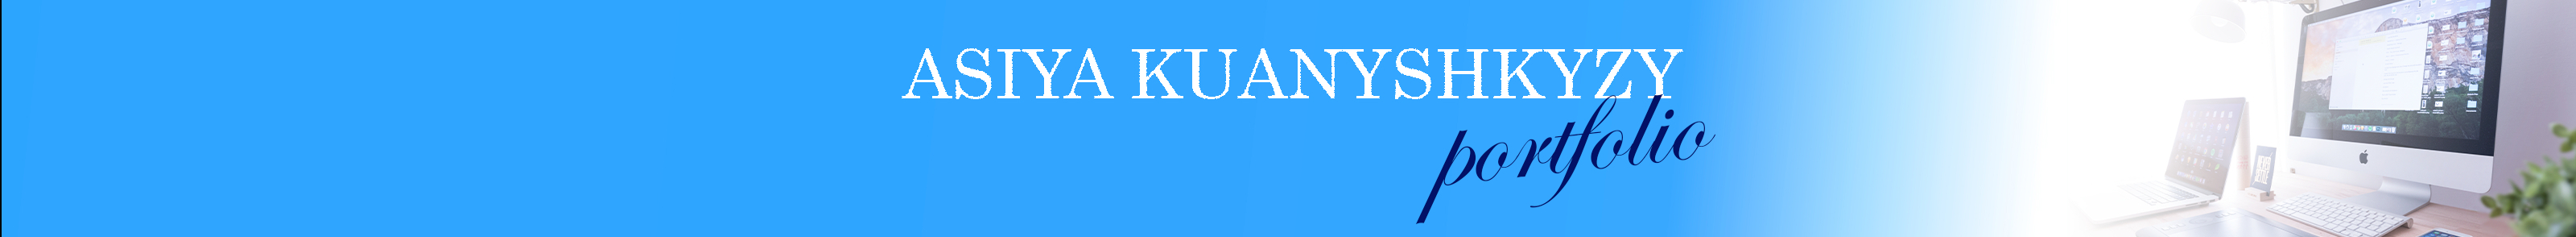 Profil-Banner von Asiya Kuanyshkyzy